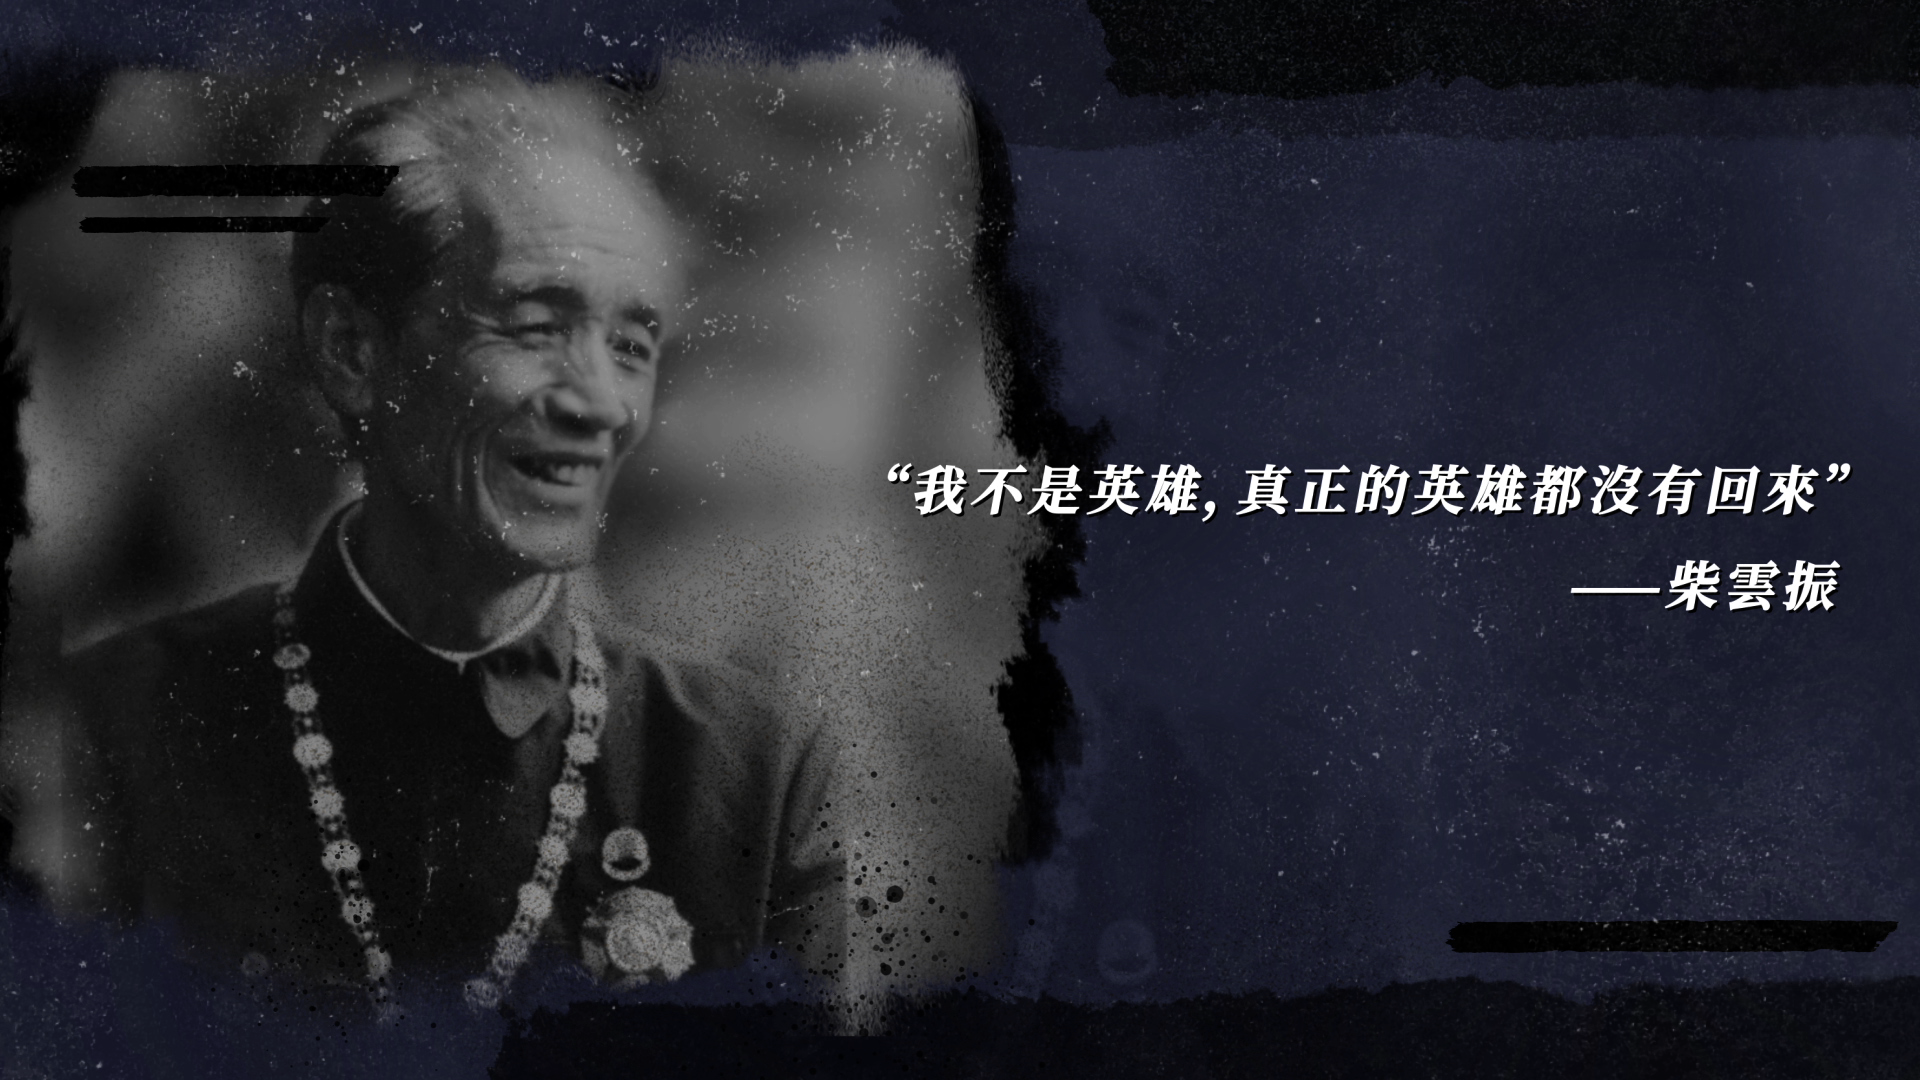 柴云振隐姓埋名三十年的一级战斗英雄